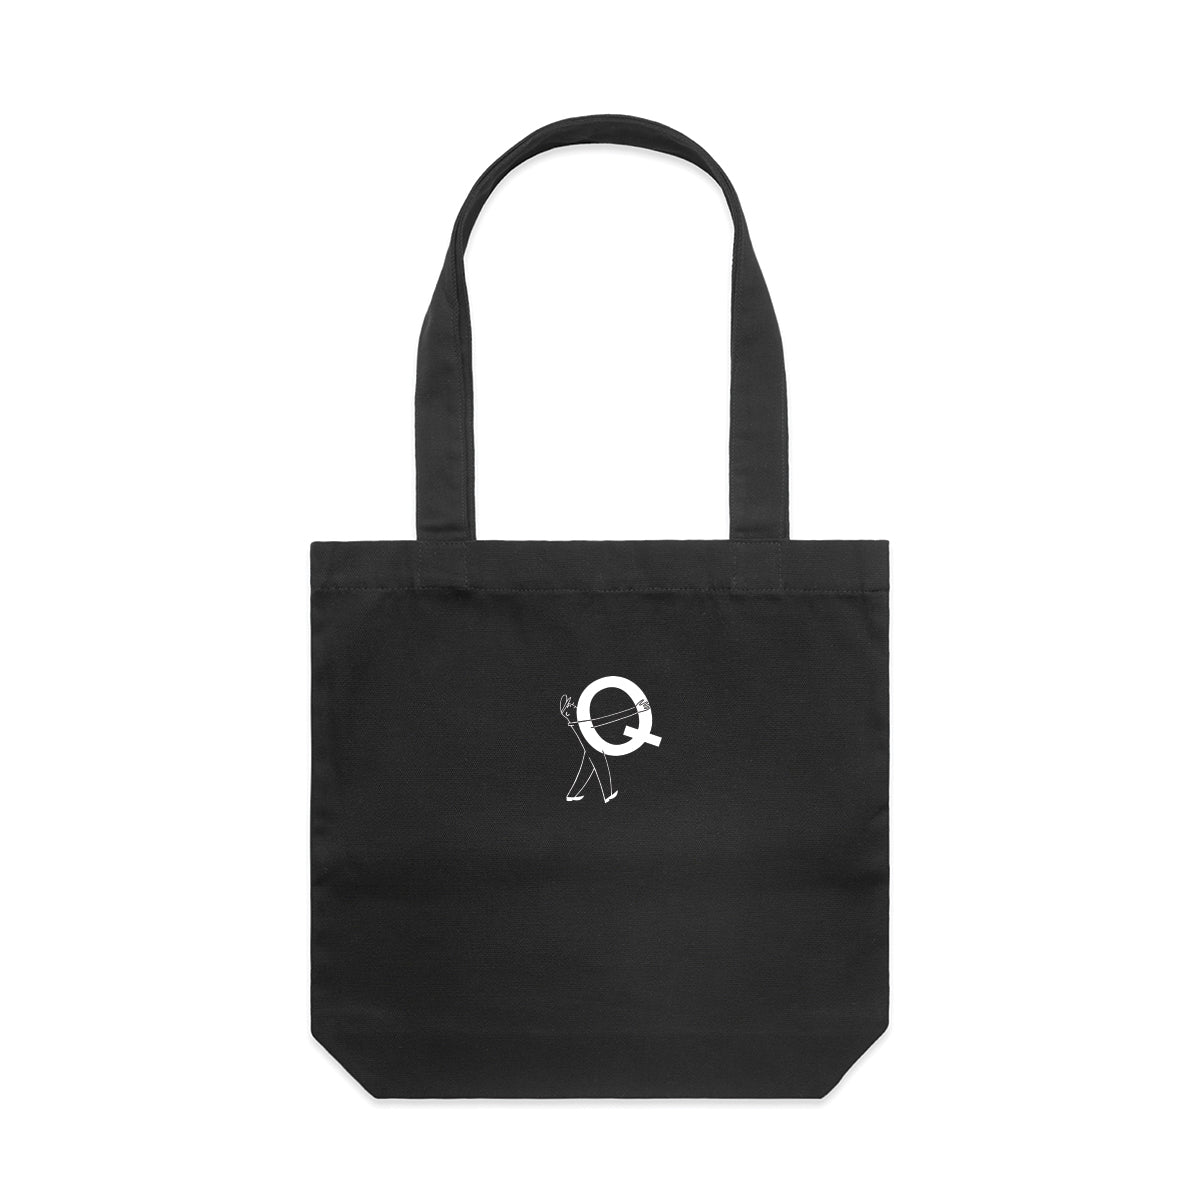 Good Weekend Quiz - Quizmaster Tote Bag